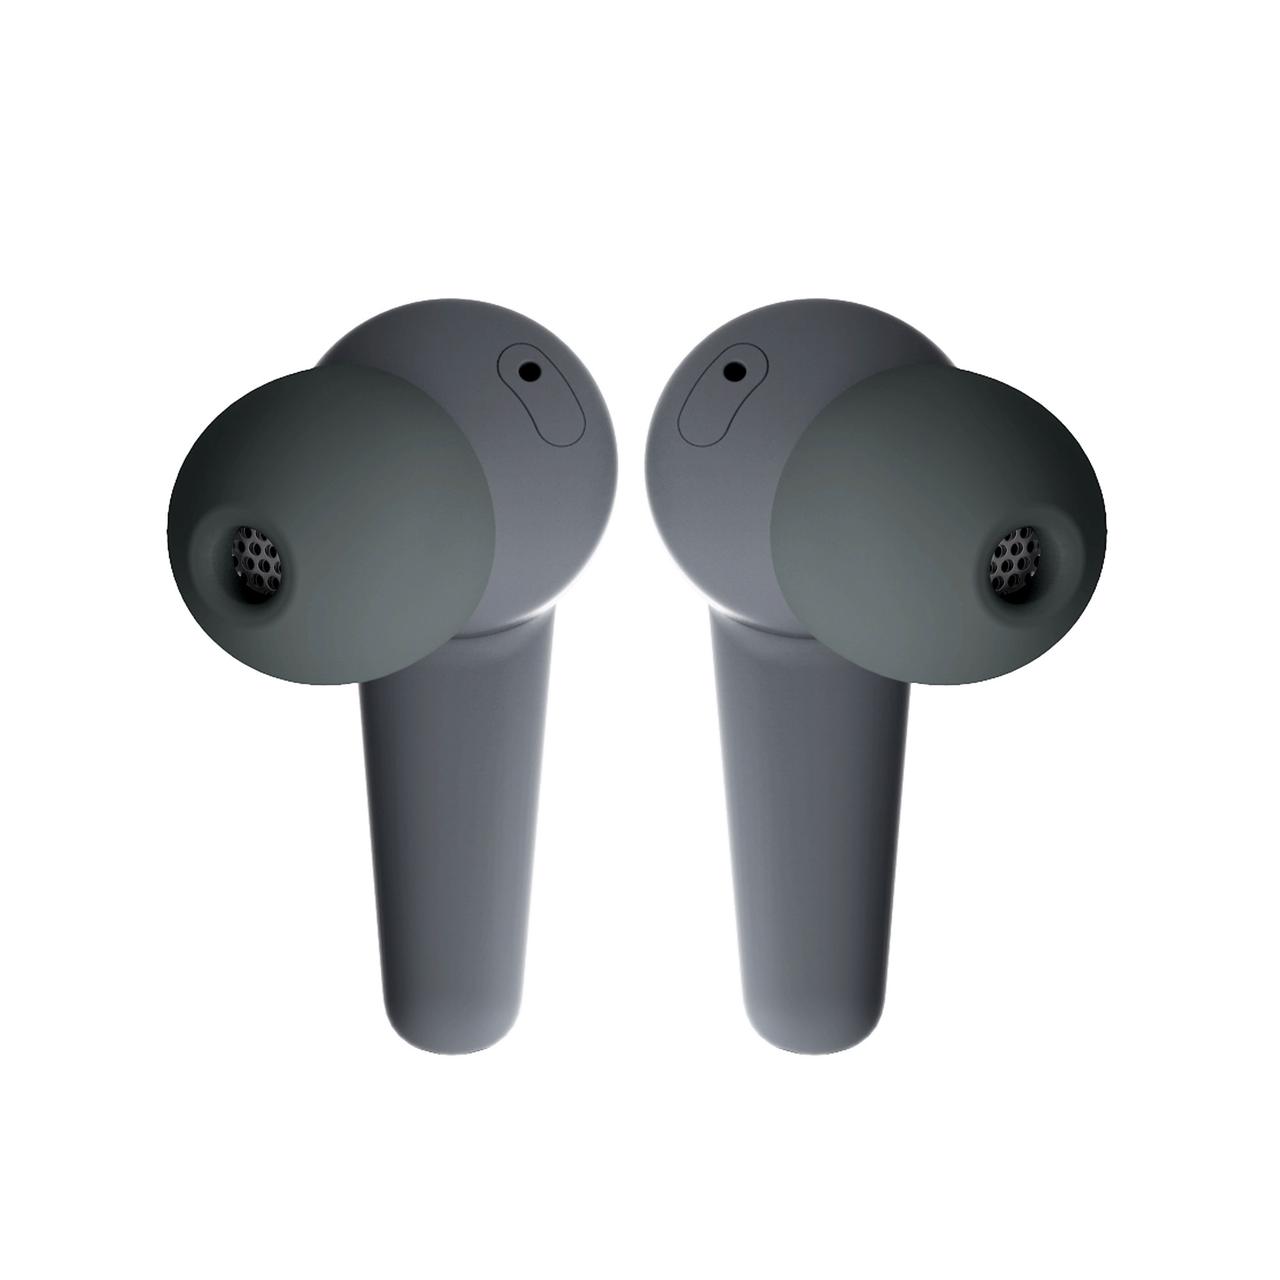 Fairphone Kopfhörer in Grau mit 3 Größen Ohrstöpseln für die perfekte Passform, Frontansicht